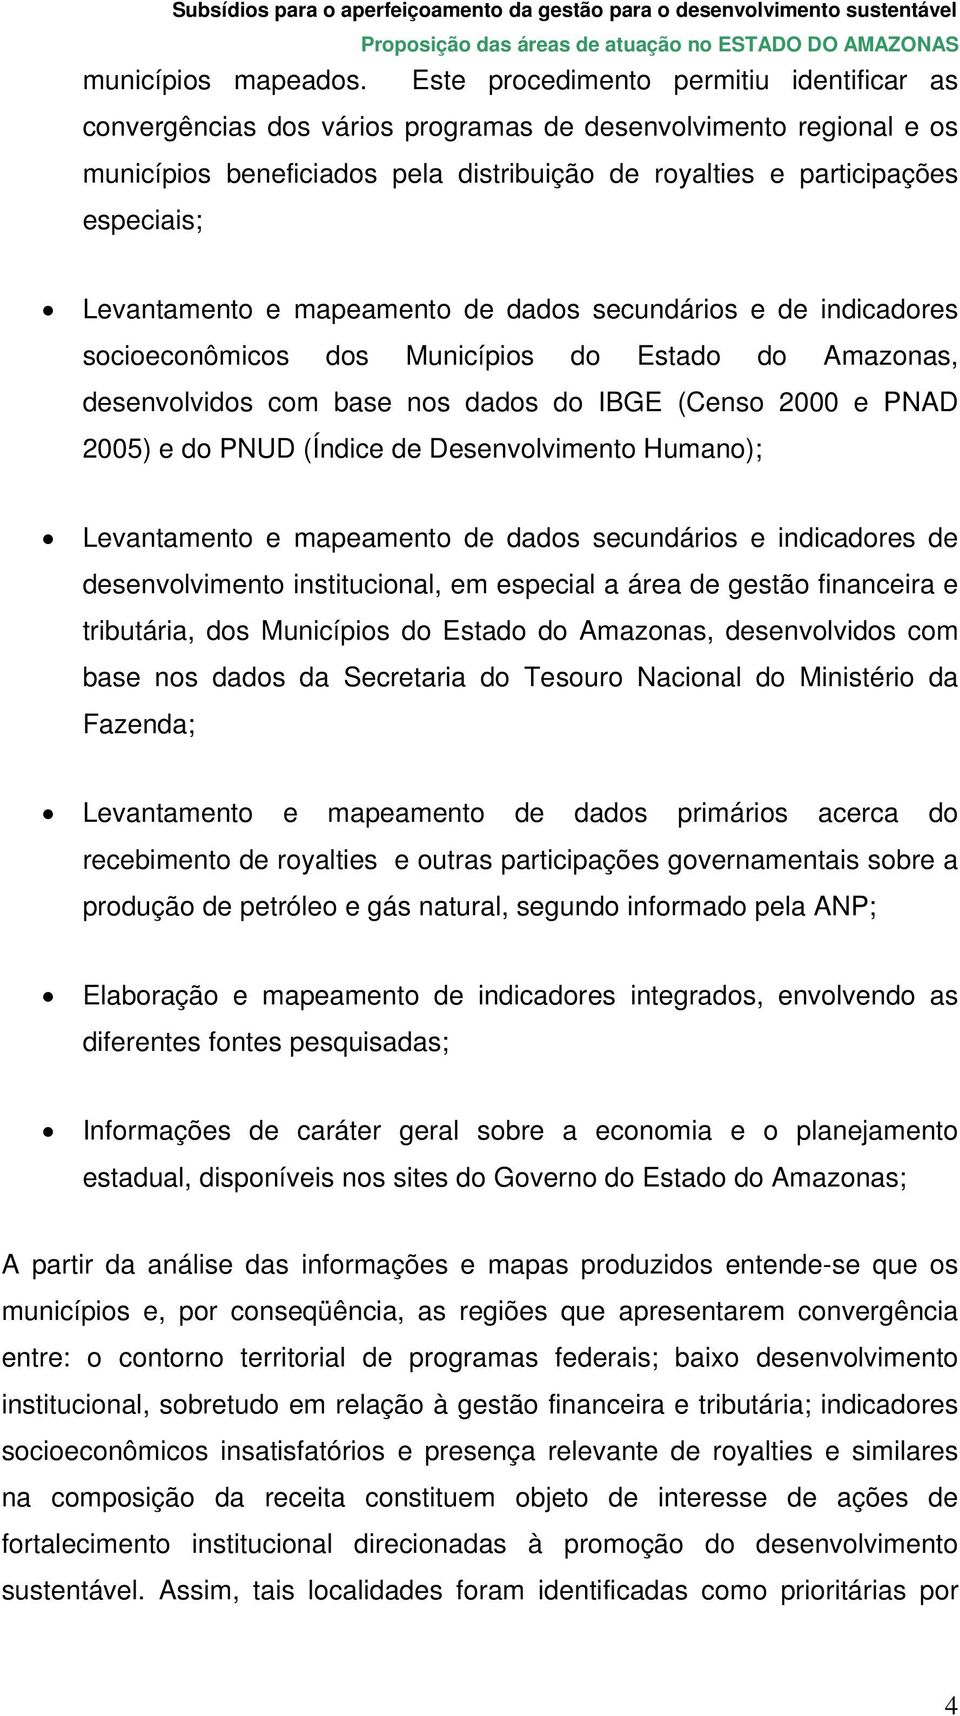 Levantamento e mapeamento de dados secundários e de indicadores socioeconômicos dos Municípios do Estado do Amazonas, desenvolvidos com base nos dados do IBGE (Censo 2000 e PNAD 2005) e do PNUD